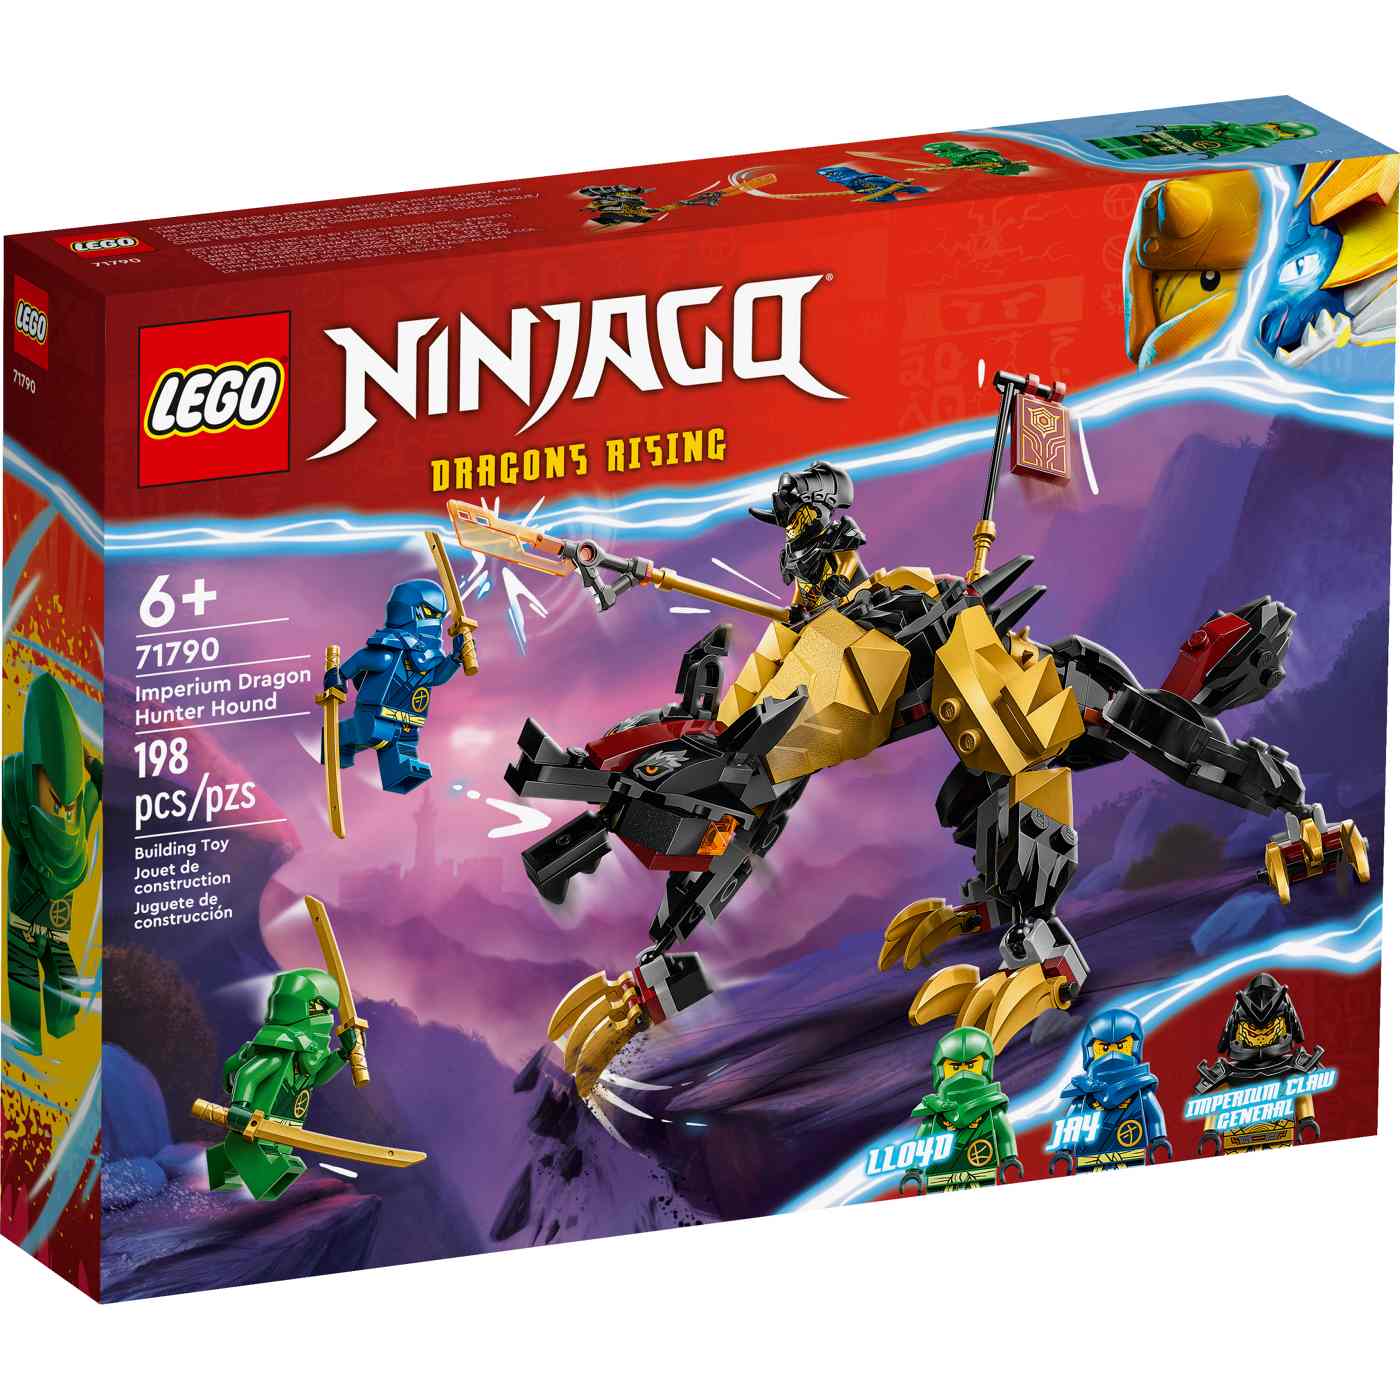 LEGO NINJAGO Imperium Dragon Hunter Hound Set; image 2 of 2